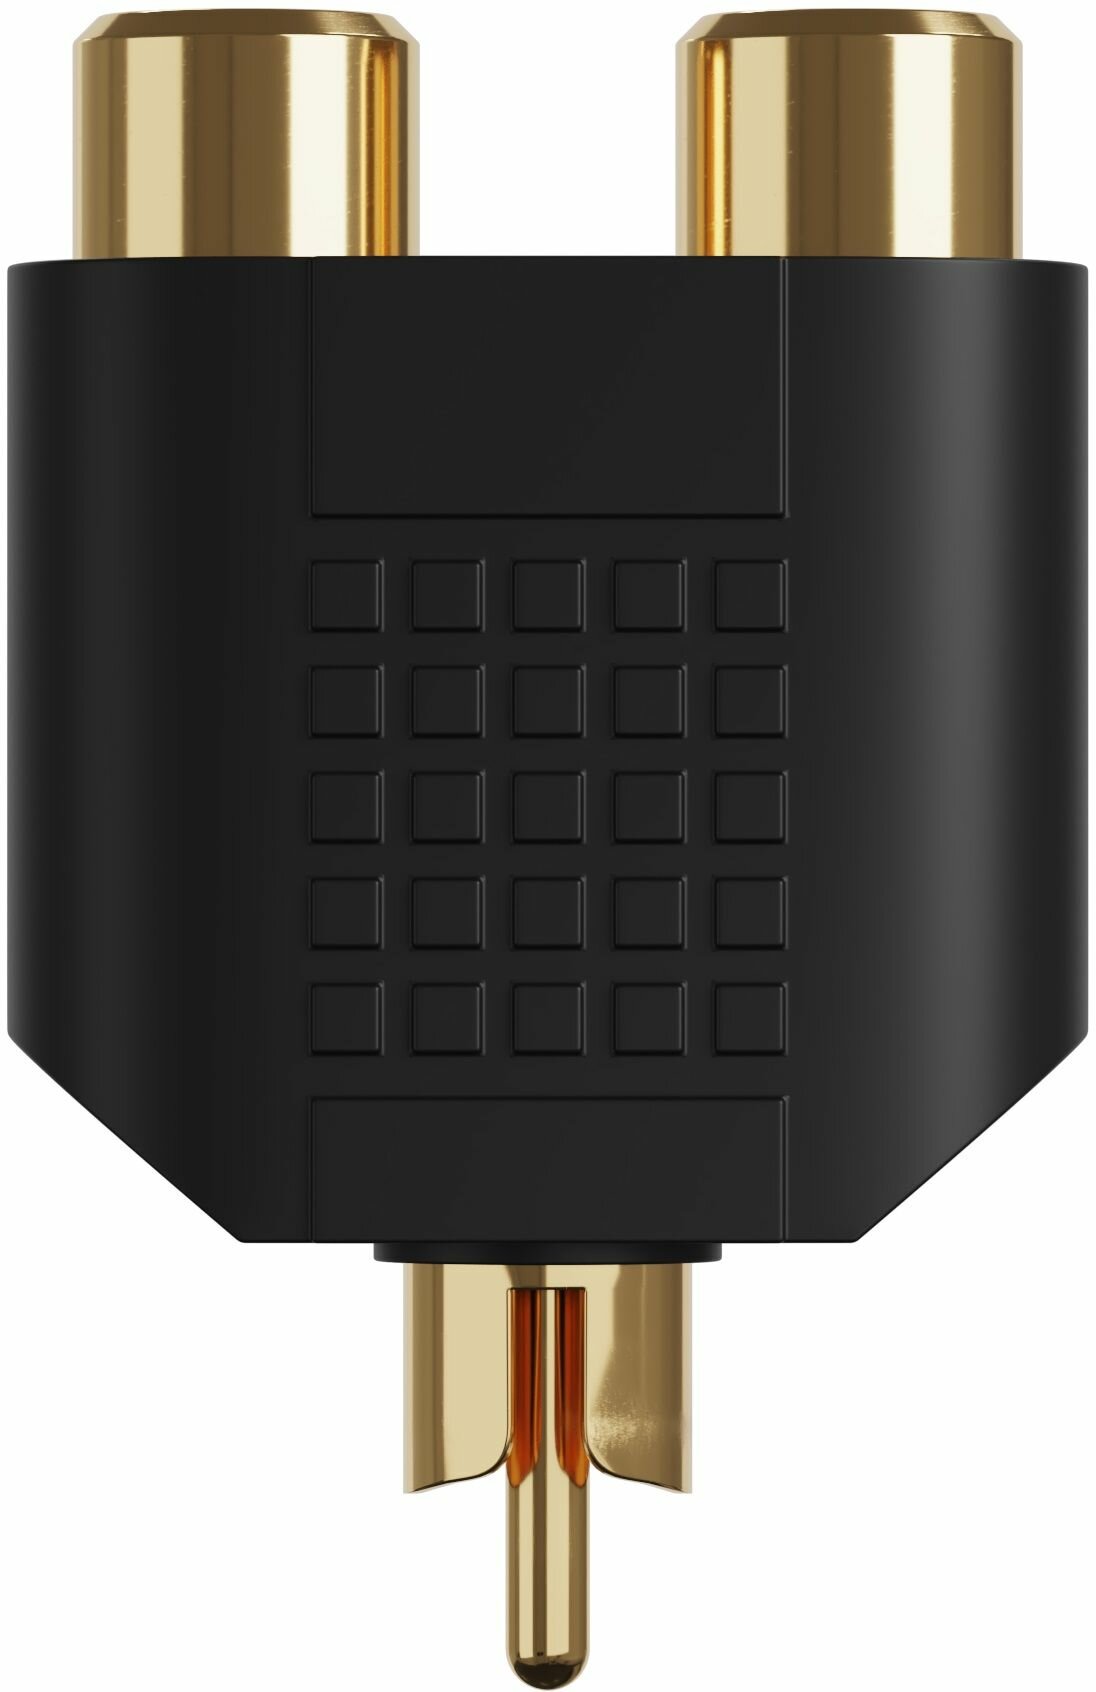 Адаптер переходник разветвитель GSMIN A91 RCA тюльпан (M) - 2 x RCA (F) тюльпана (Черный)